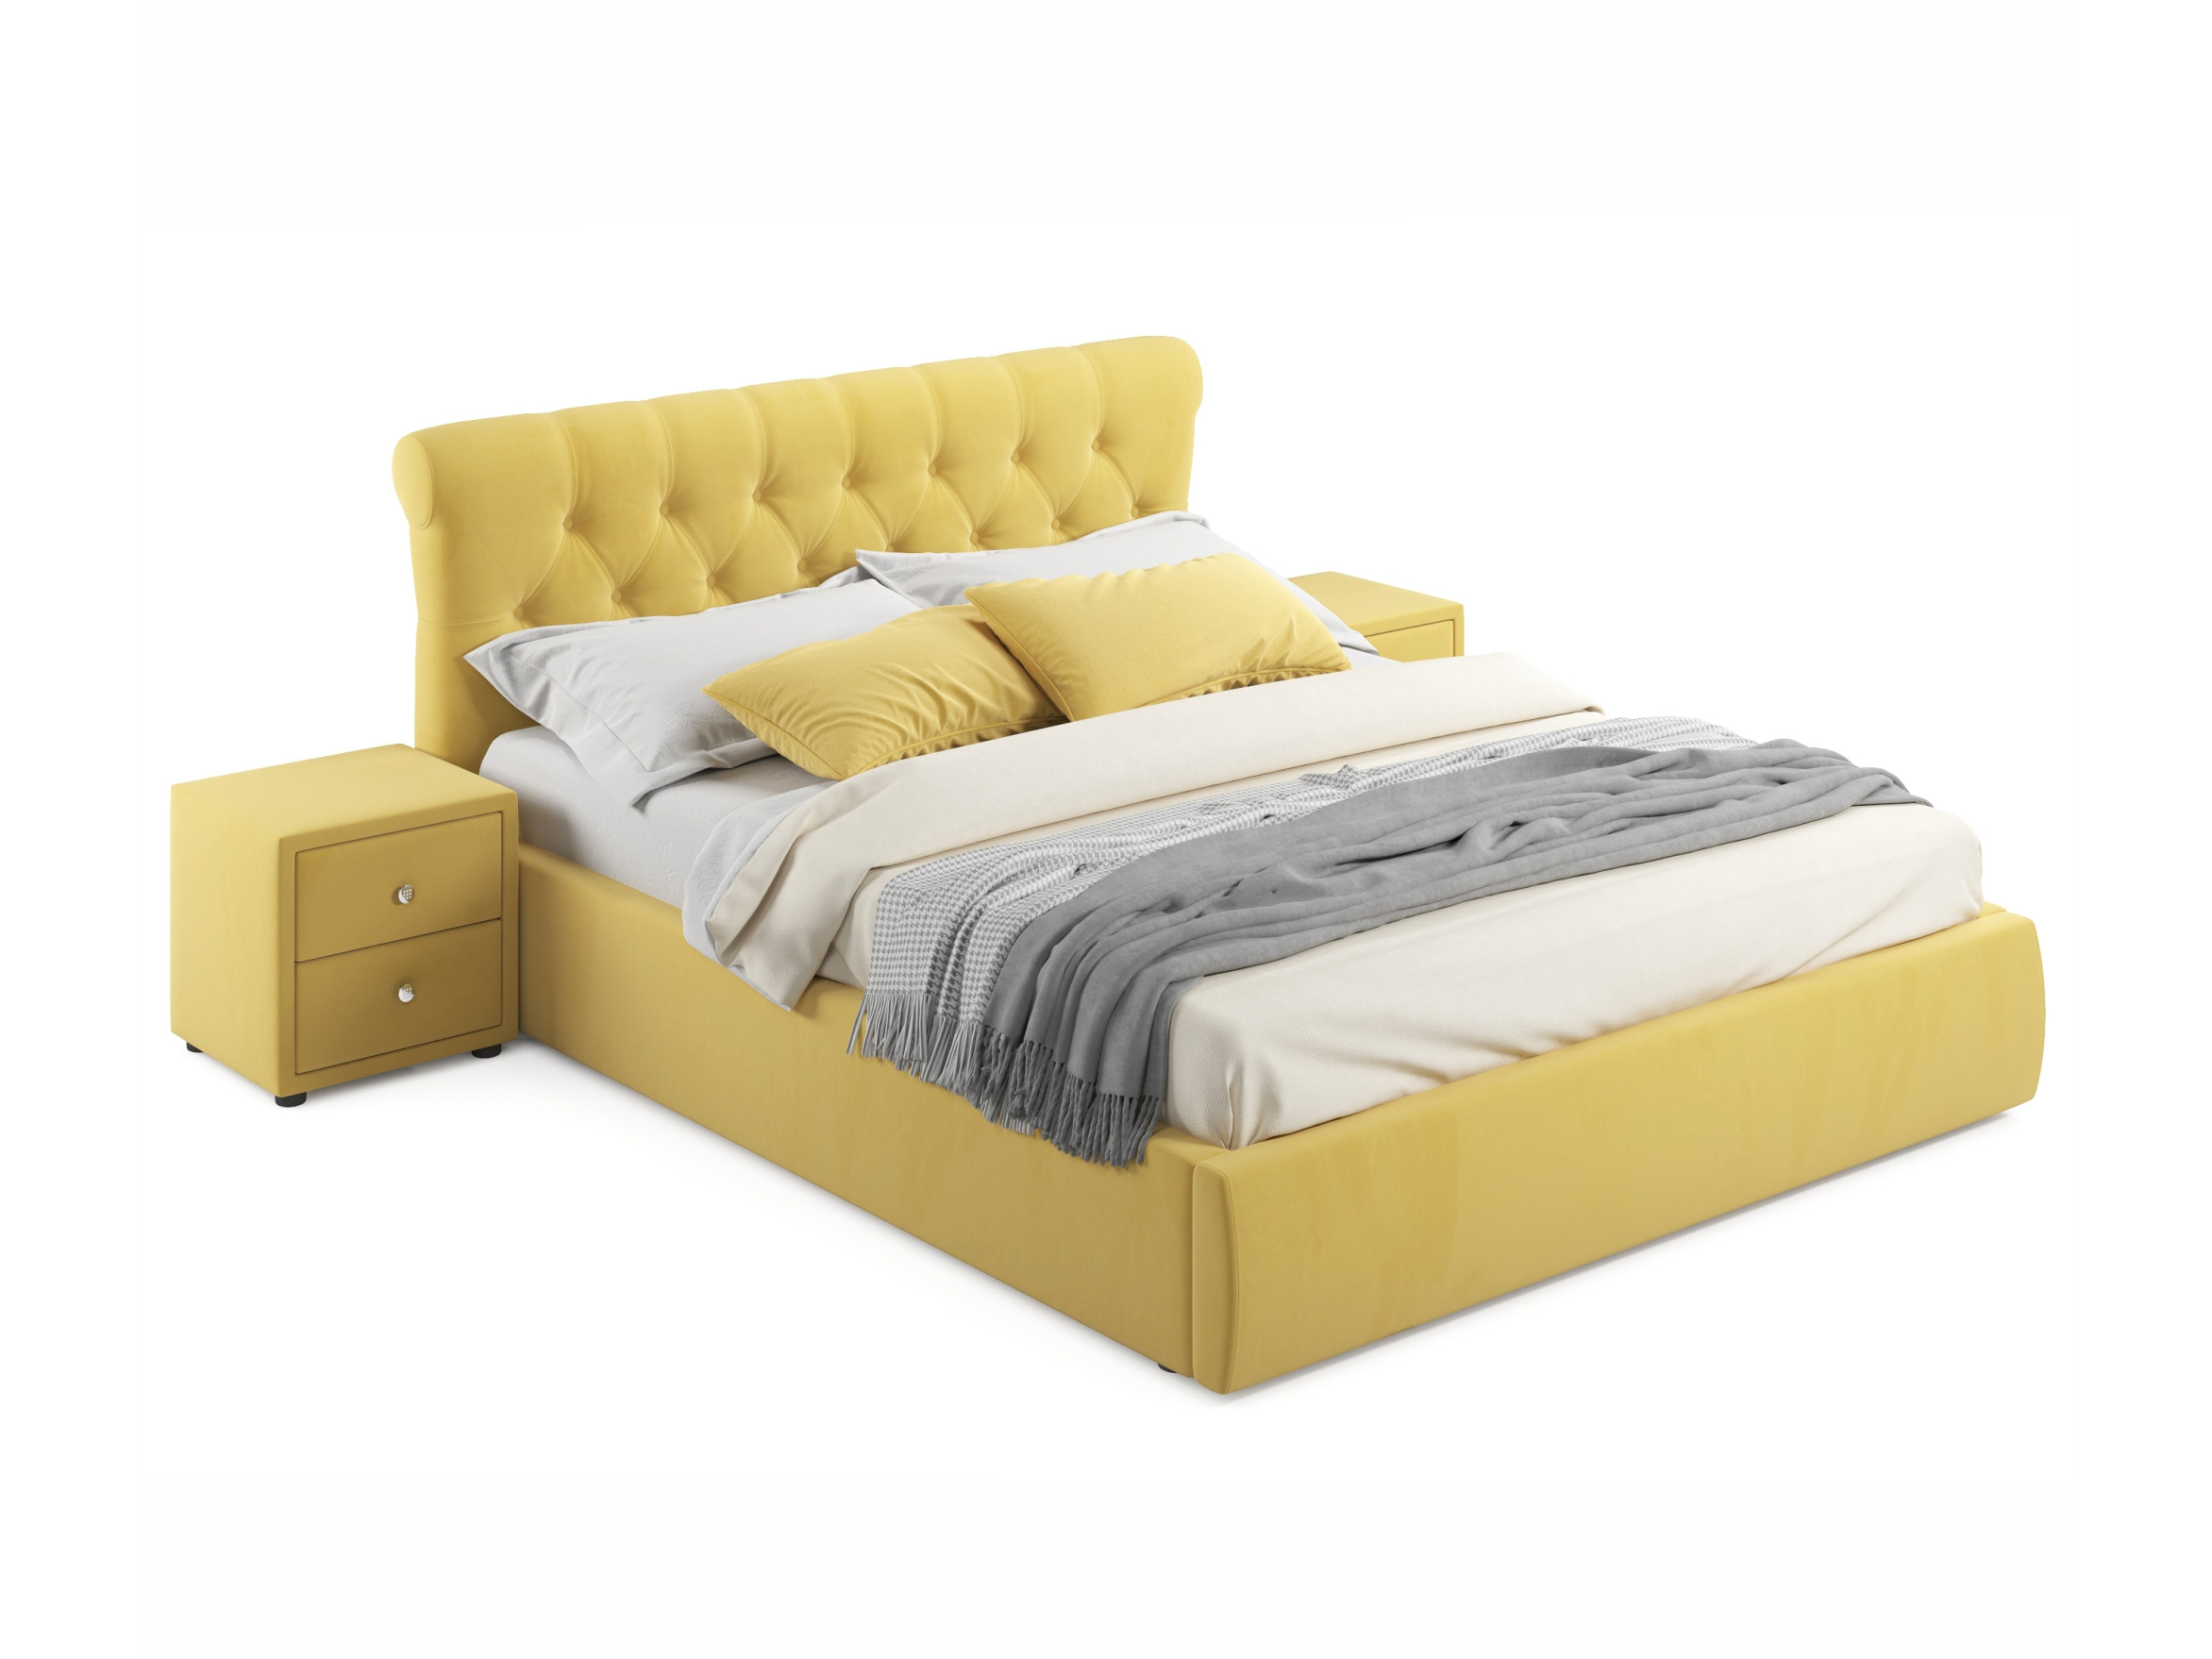 Мягкая кровать с тумбами Ameli 1600 желтая с подъемным механизмом желтый, Желтый, Велюр, ДСП мягкая кровать ameli 1600 желтая с подъемным механизмом желтый желтый велюр дсп